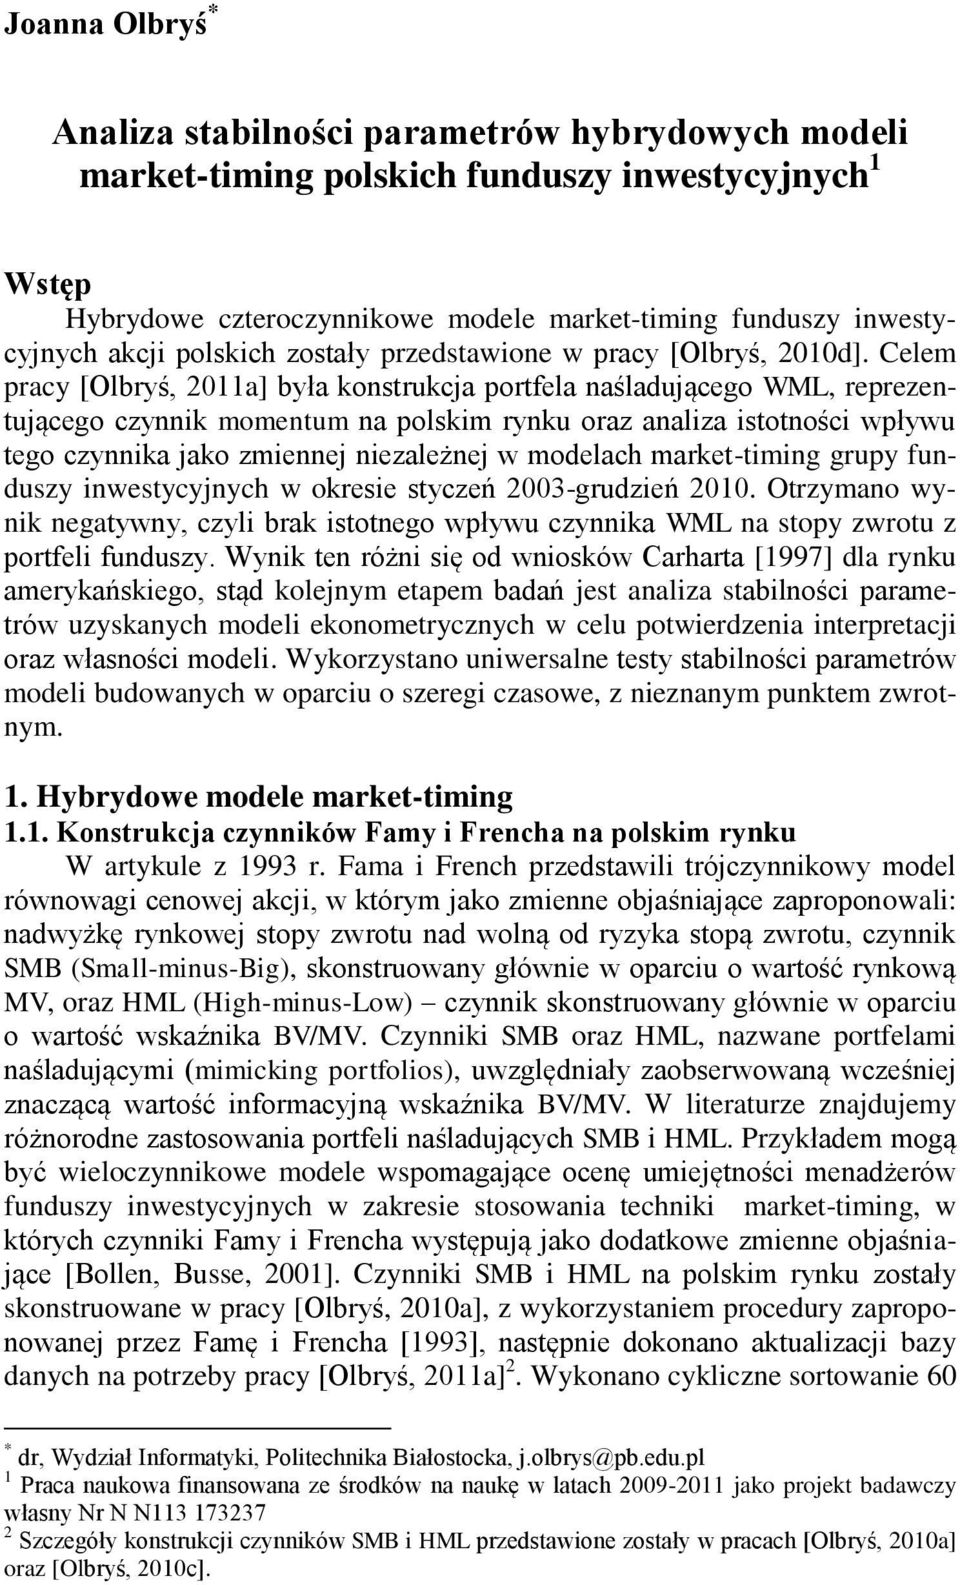 Celem pracy [Olbryś, 2011a] była konsrukcja porfela naśladującego WML, reprezenującego czynnik momenum na polskim rynku oraz analiza isoności wpływu ego czynnika jako zmiennej niezależnej w modelach